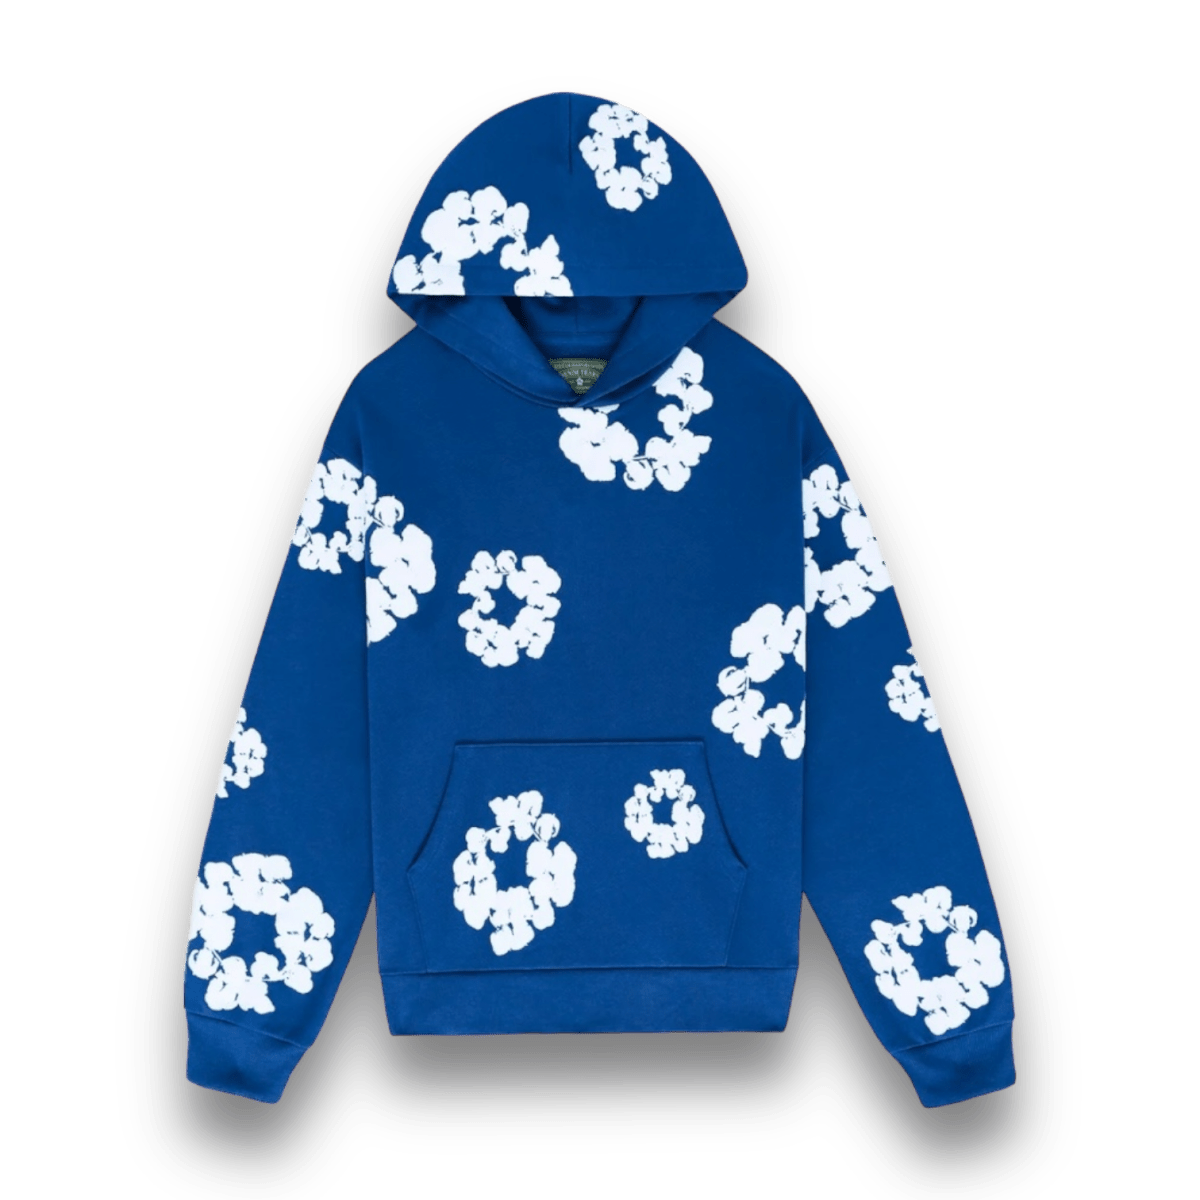 Denim Tears Cotton Wreath Sweatshirt Royal Blue - Clothing - Jawns on Fire Sneakers & Streetwear